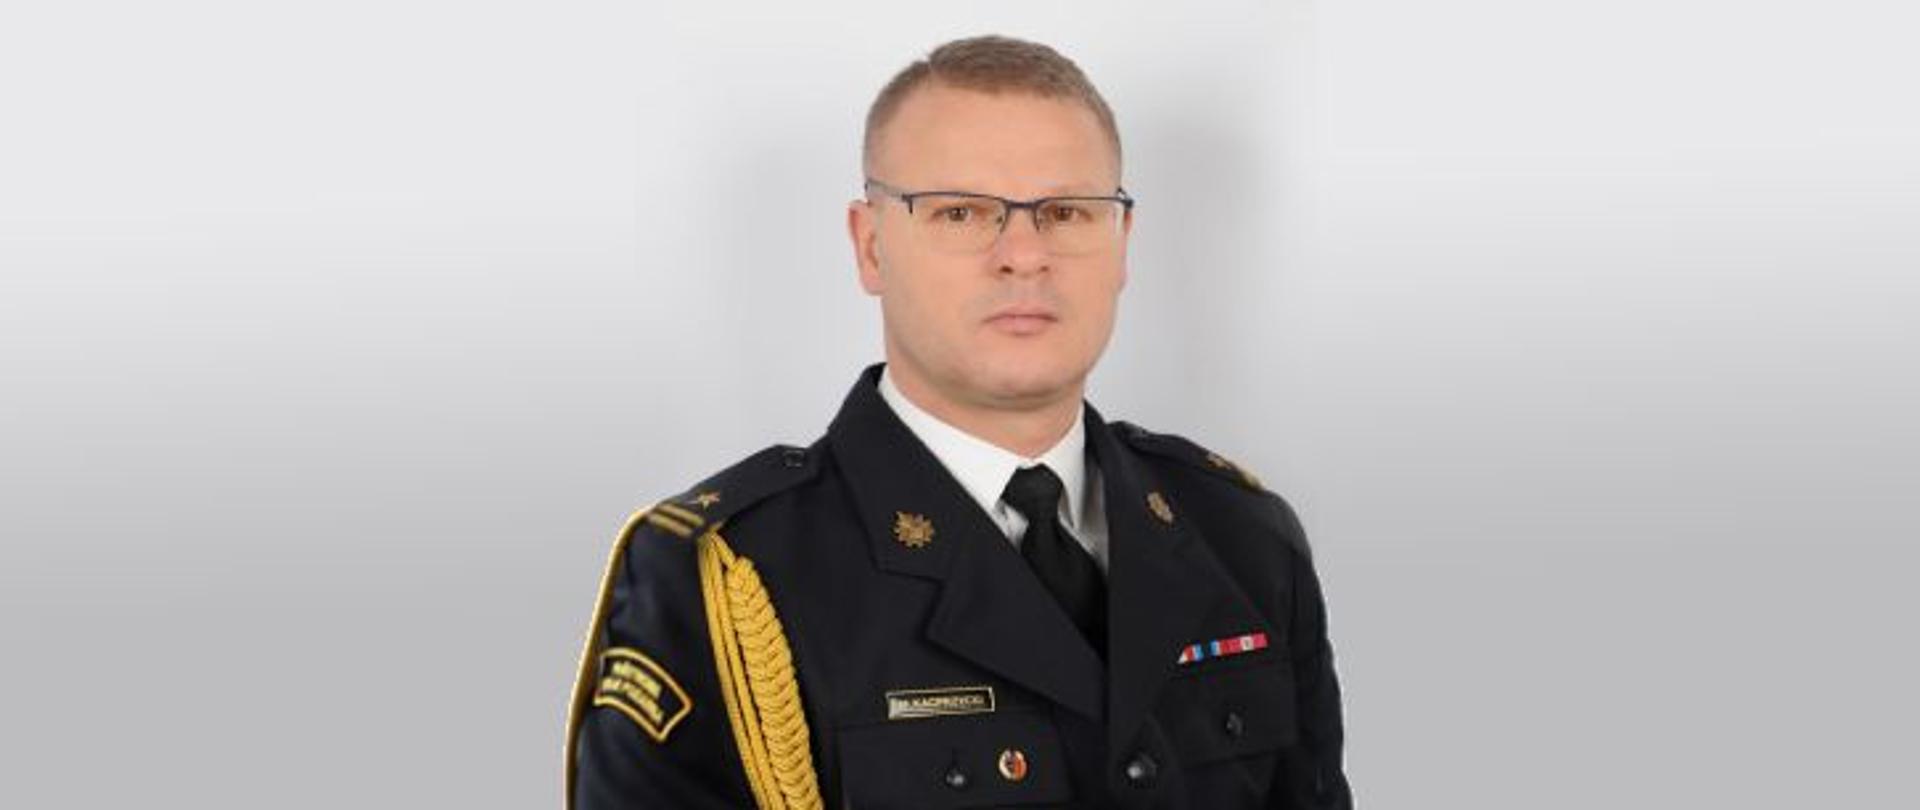 Zdjęcie profilowe w mundurze wyjściowym pełniącego obowiązki Komendanta Powiatowego PSP w Makowie Mazowieckim